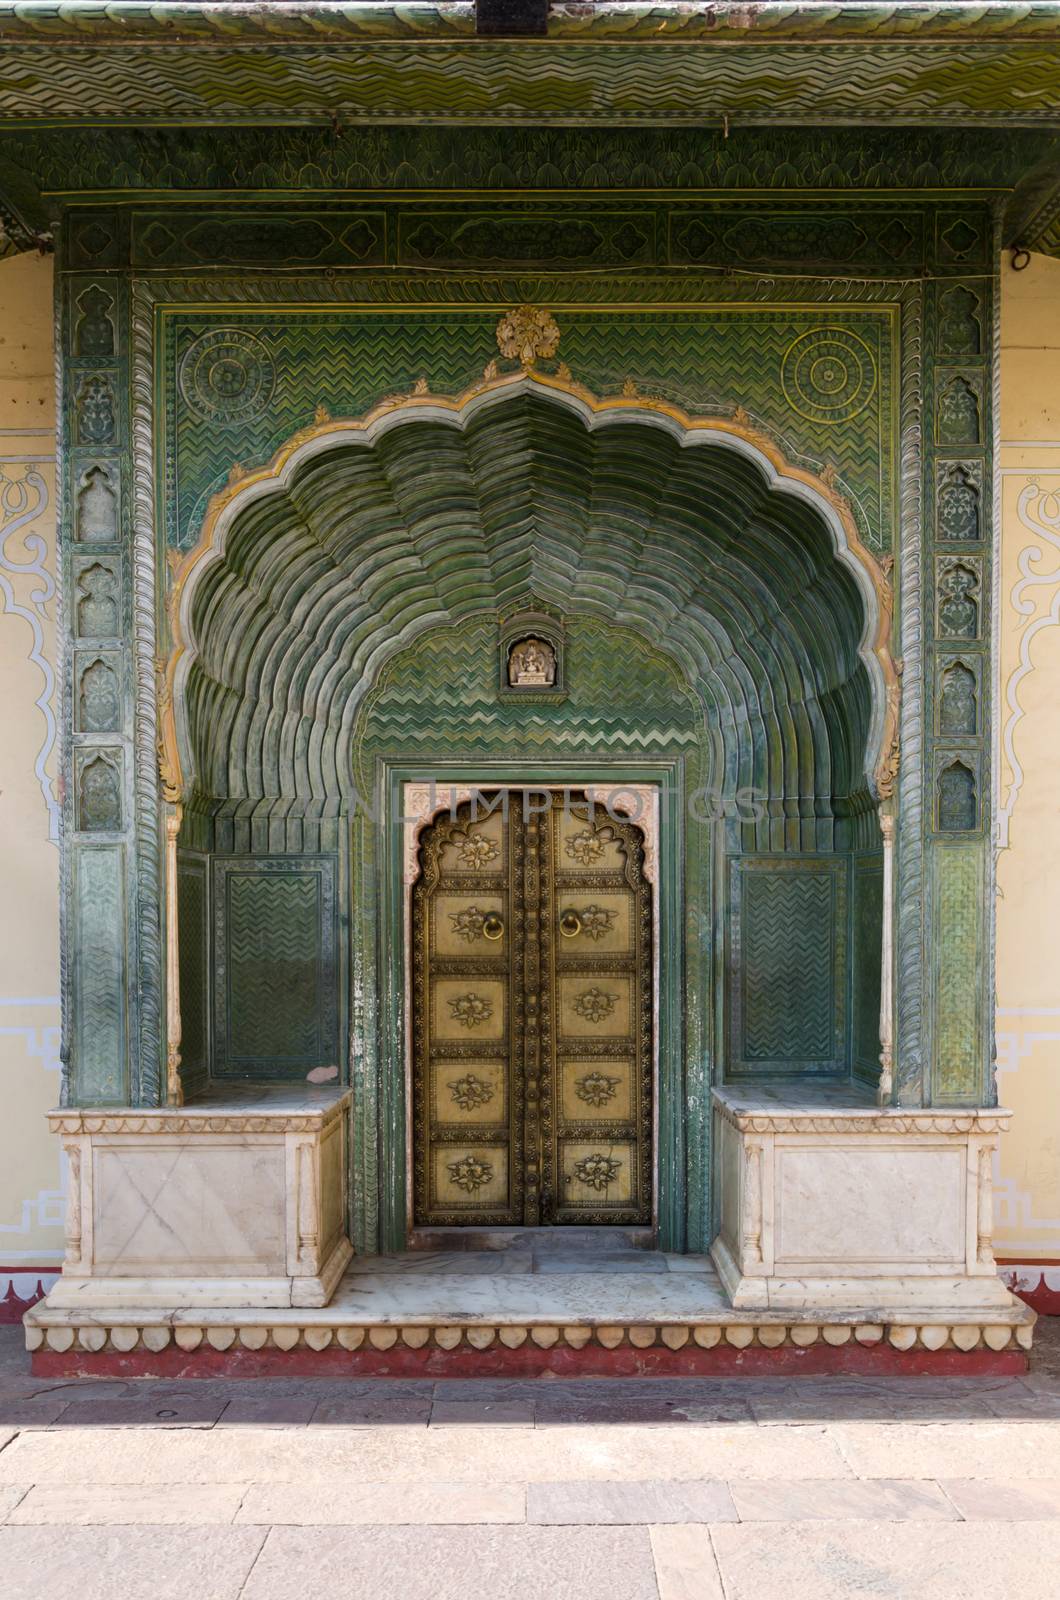 Green Gate in Pitam Niwas Chowk, Jaipur City Palace, Rajasthan, India.